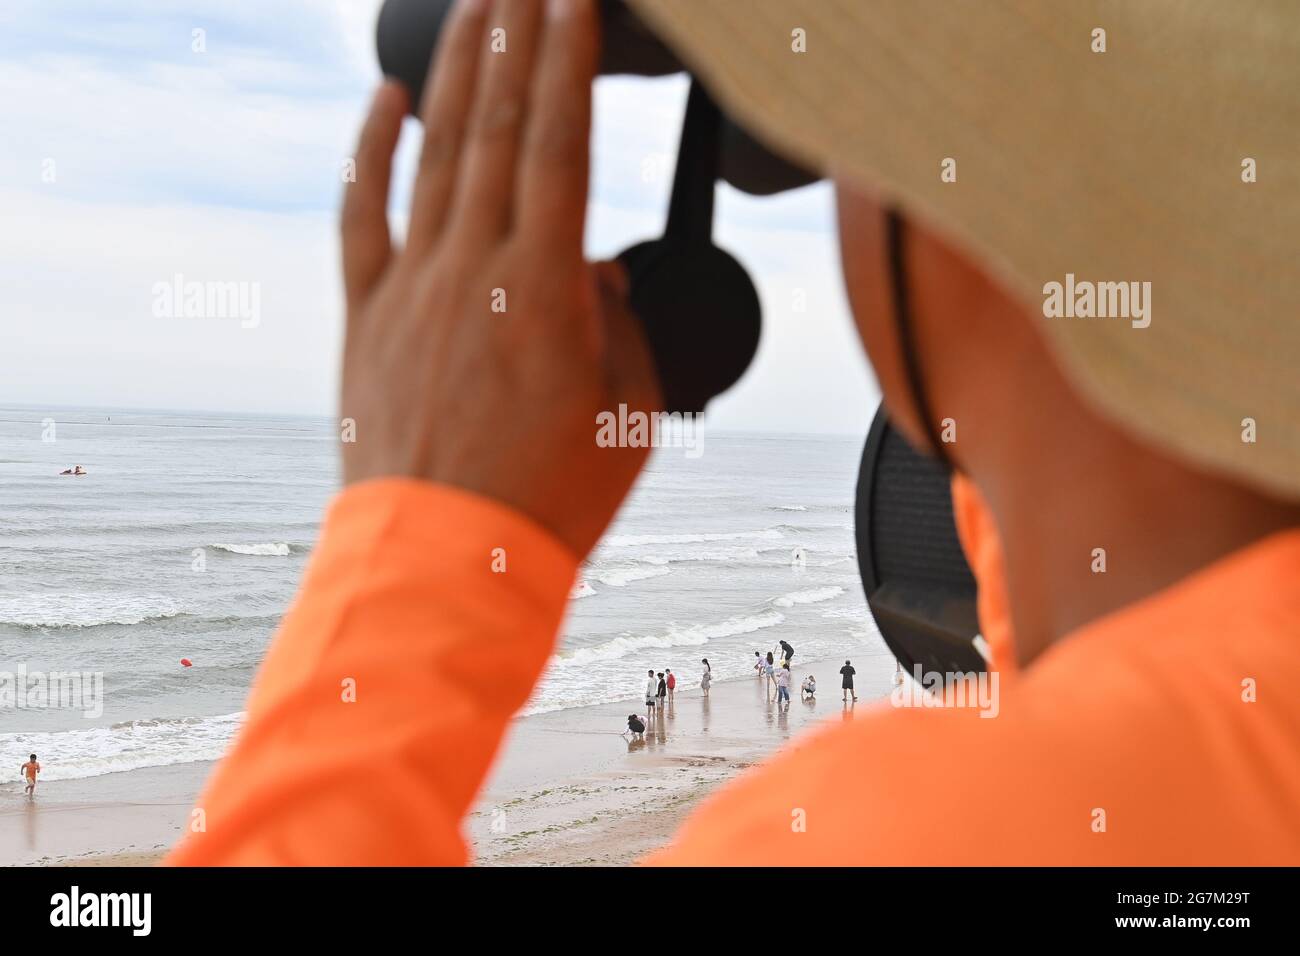 QINGDAO, CHINA - 15 DE JULIO de 2021 - Un miembro de la tripulación de rescate observa la situación de seguridad en el mar dentro de la torre de observación de la playa de baño Balandai en Qingdao, provincia de Shandong en China oriental, 15 de julio de 2021. (Foto de Liu Qiang / Costfoto/Sipa USA) Foto de stock